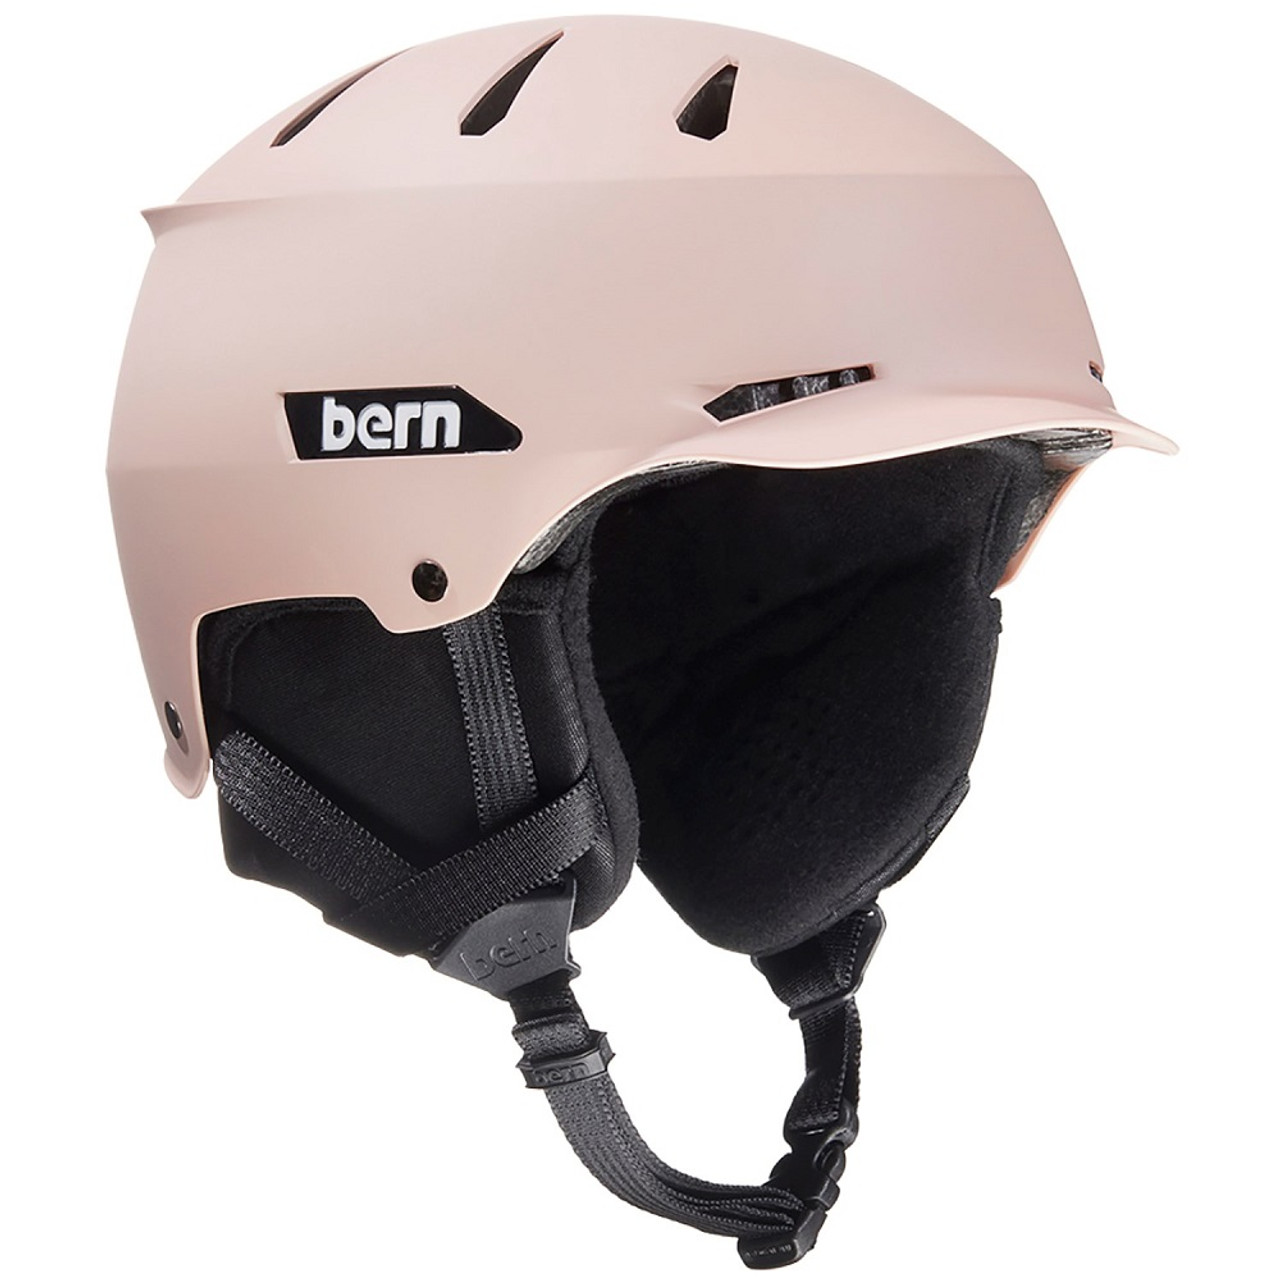 Bern Hendrix Jr Snow Helmet Mips Matt Blush S/M